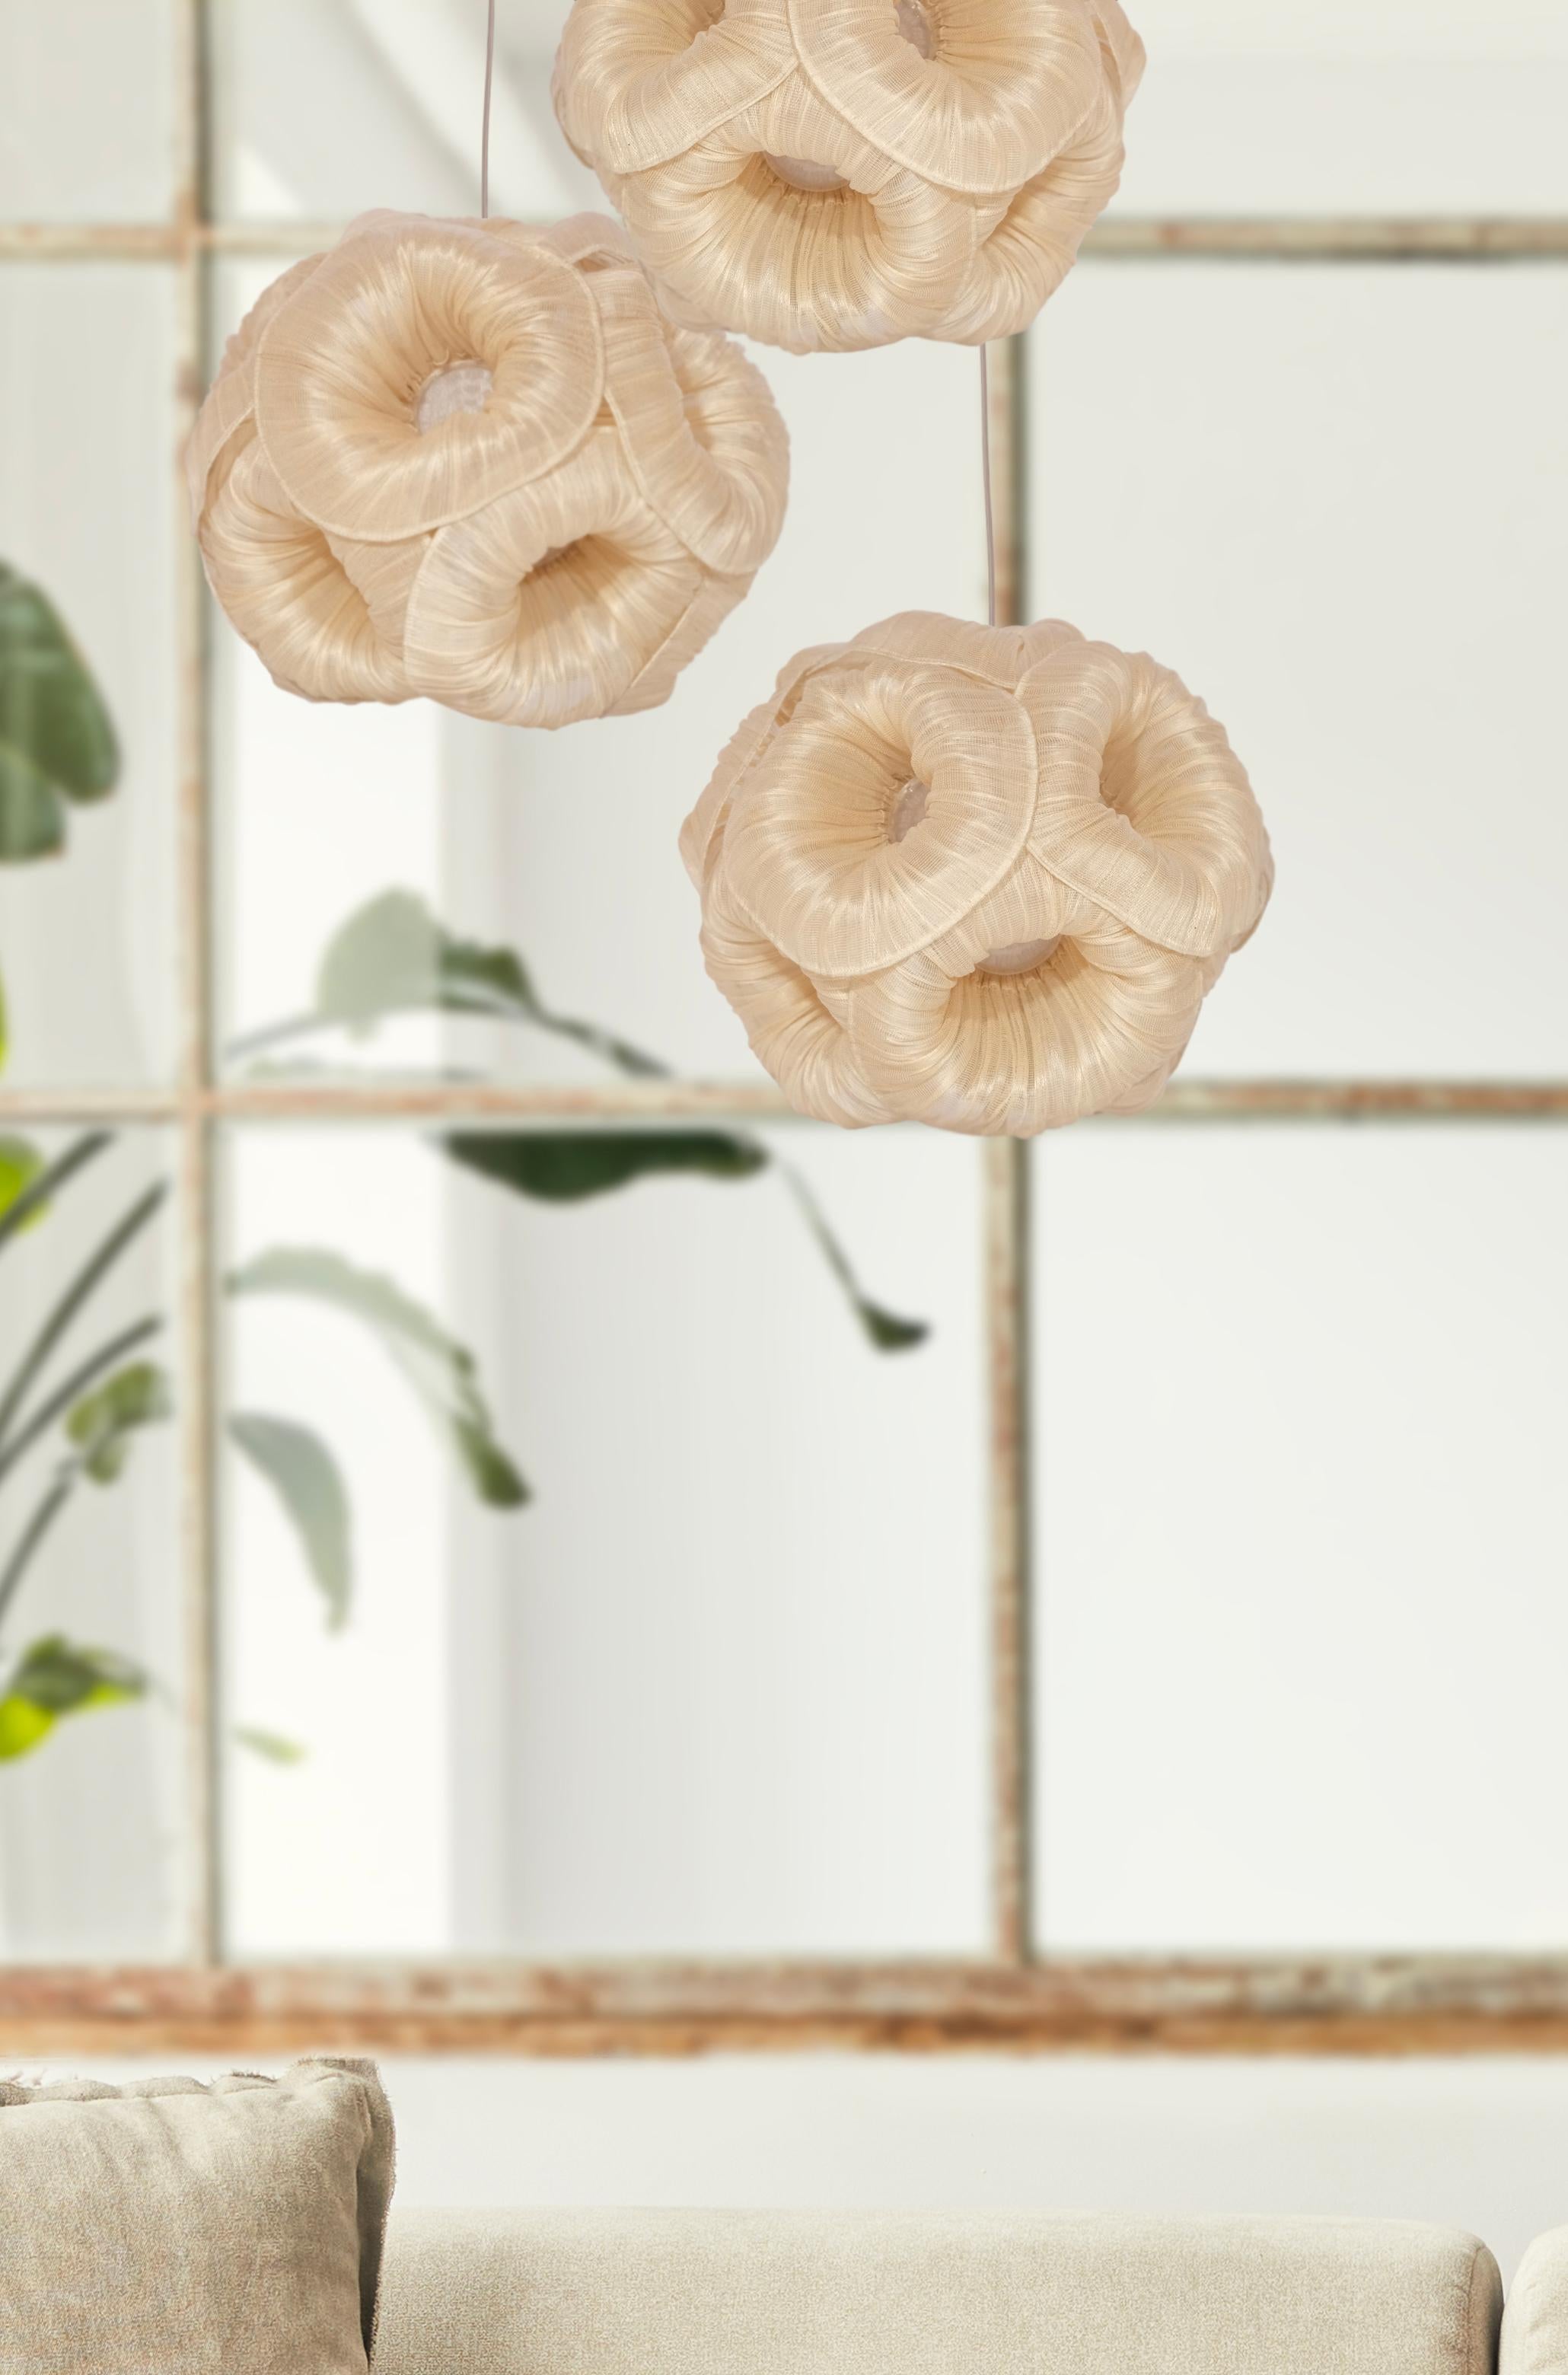 Die schlichte Eleganz der Anemone Pendelleuchte sorgt für eine auffällige Ästhetik in jedem Zuhause und verbreitet gleichzeitig ein angenehmes Licht. Der kunstvolle Körper ist vollständig aus Banaca (Bananen-Abacca) gefertigt, einem organischen